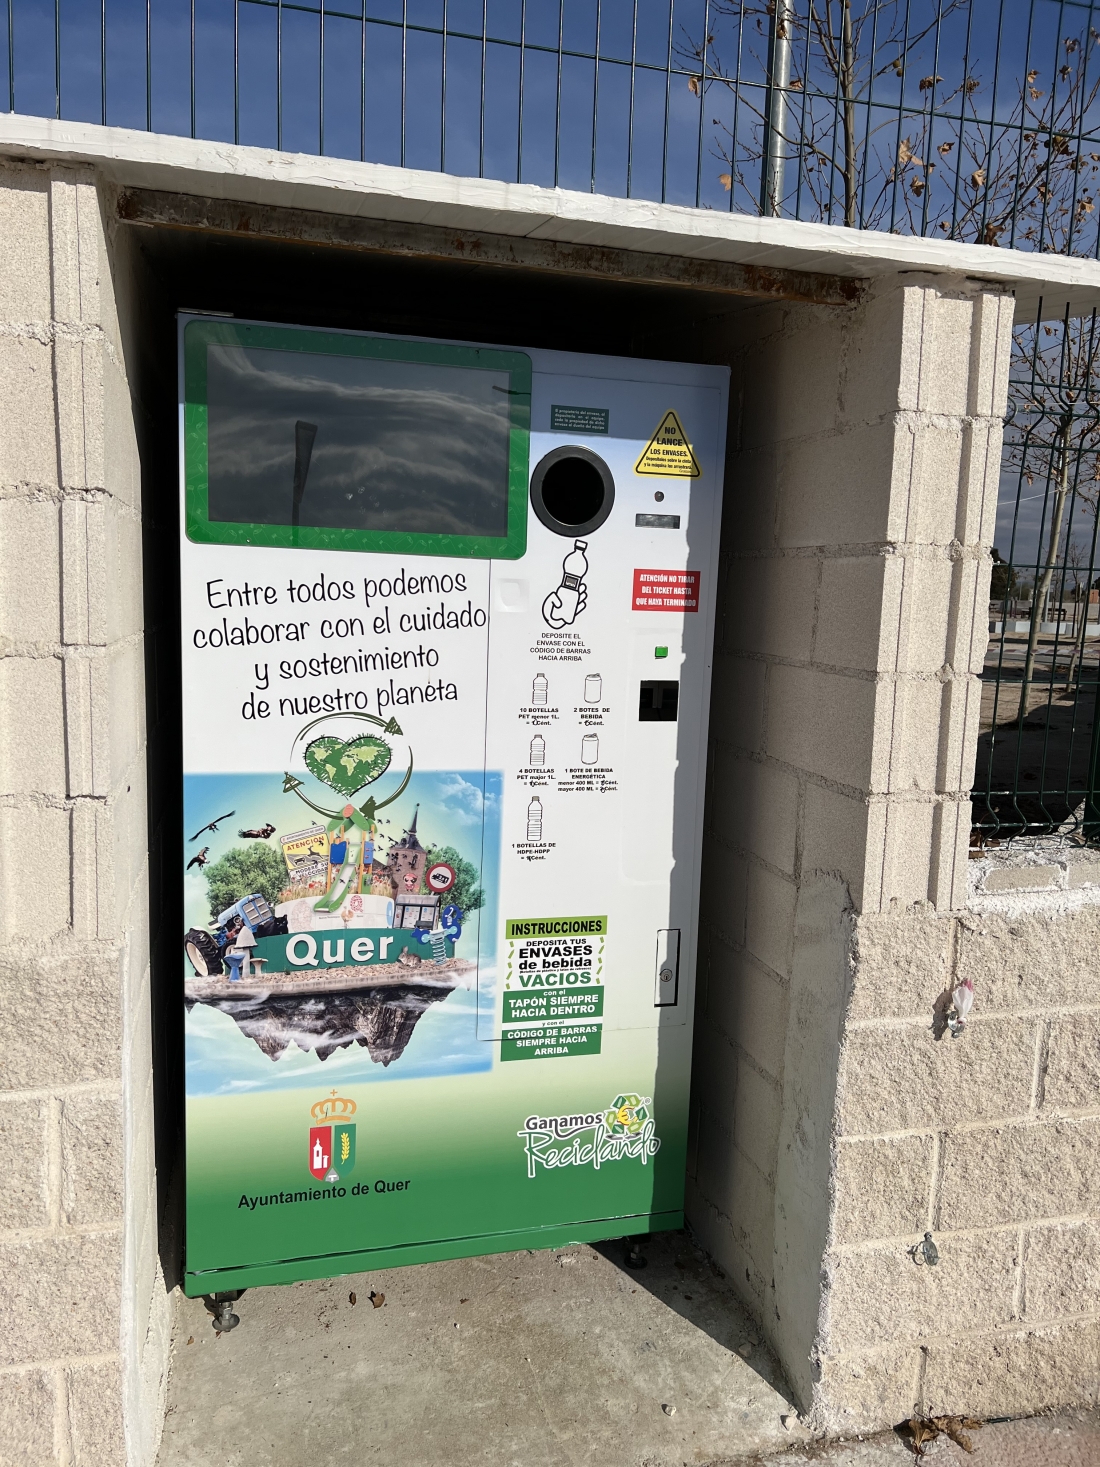 El Ayuntamiento instala una máquina que recompensa el reciclaje de envases